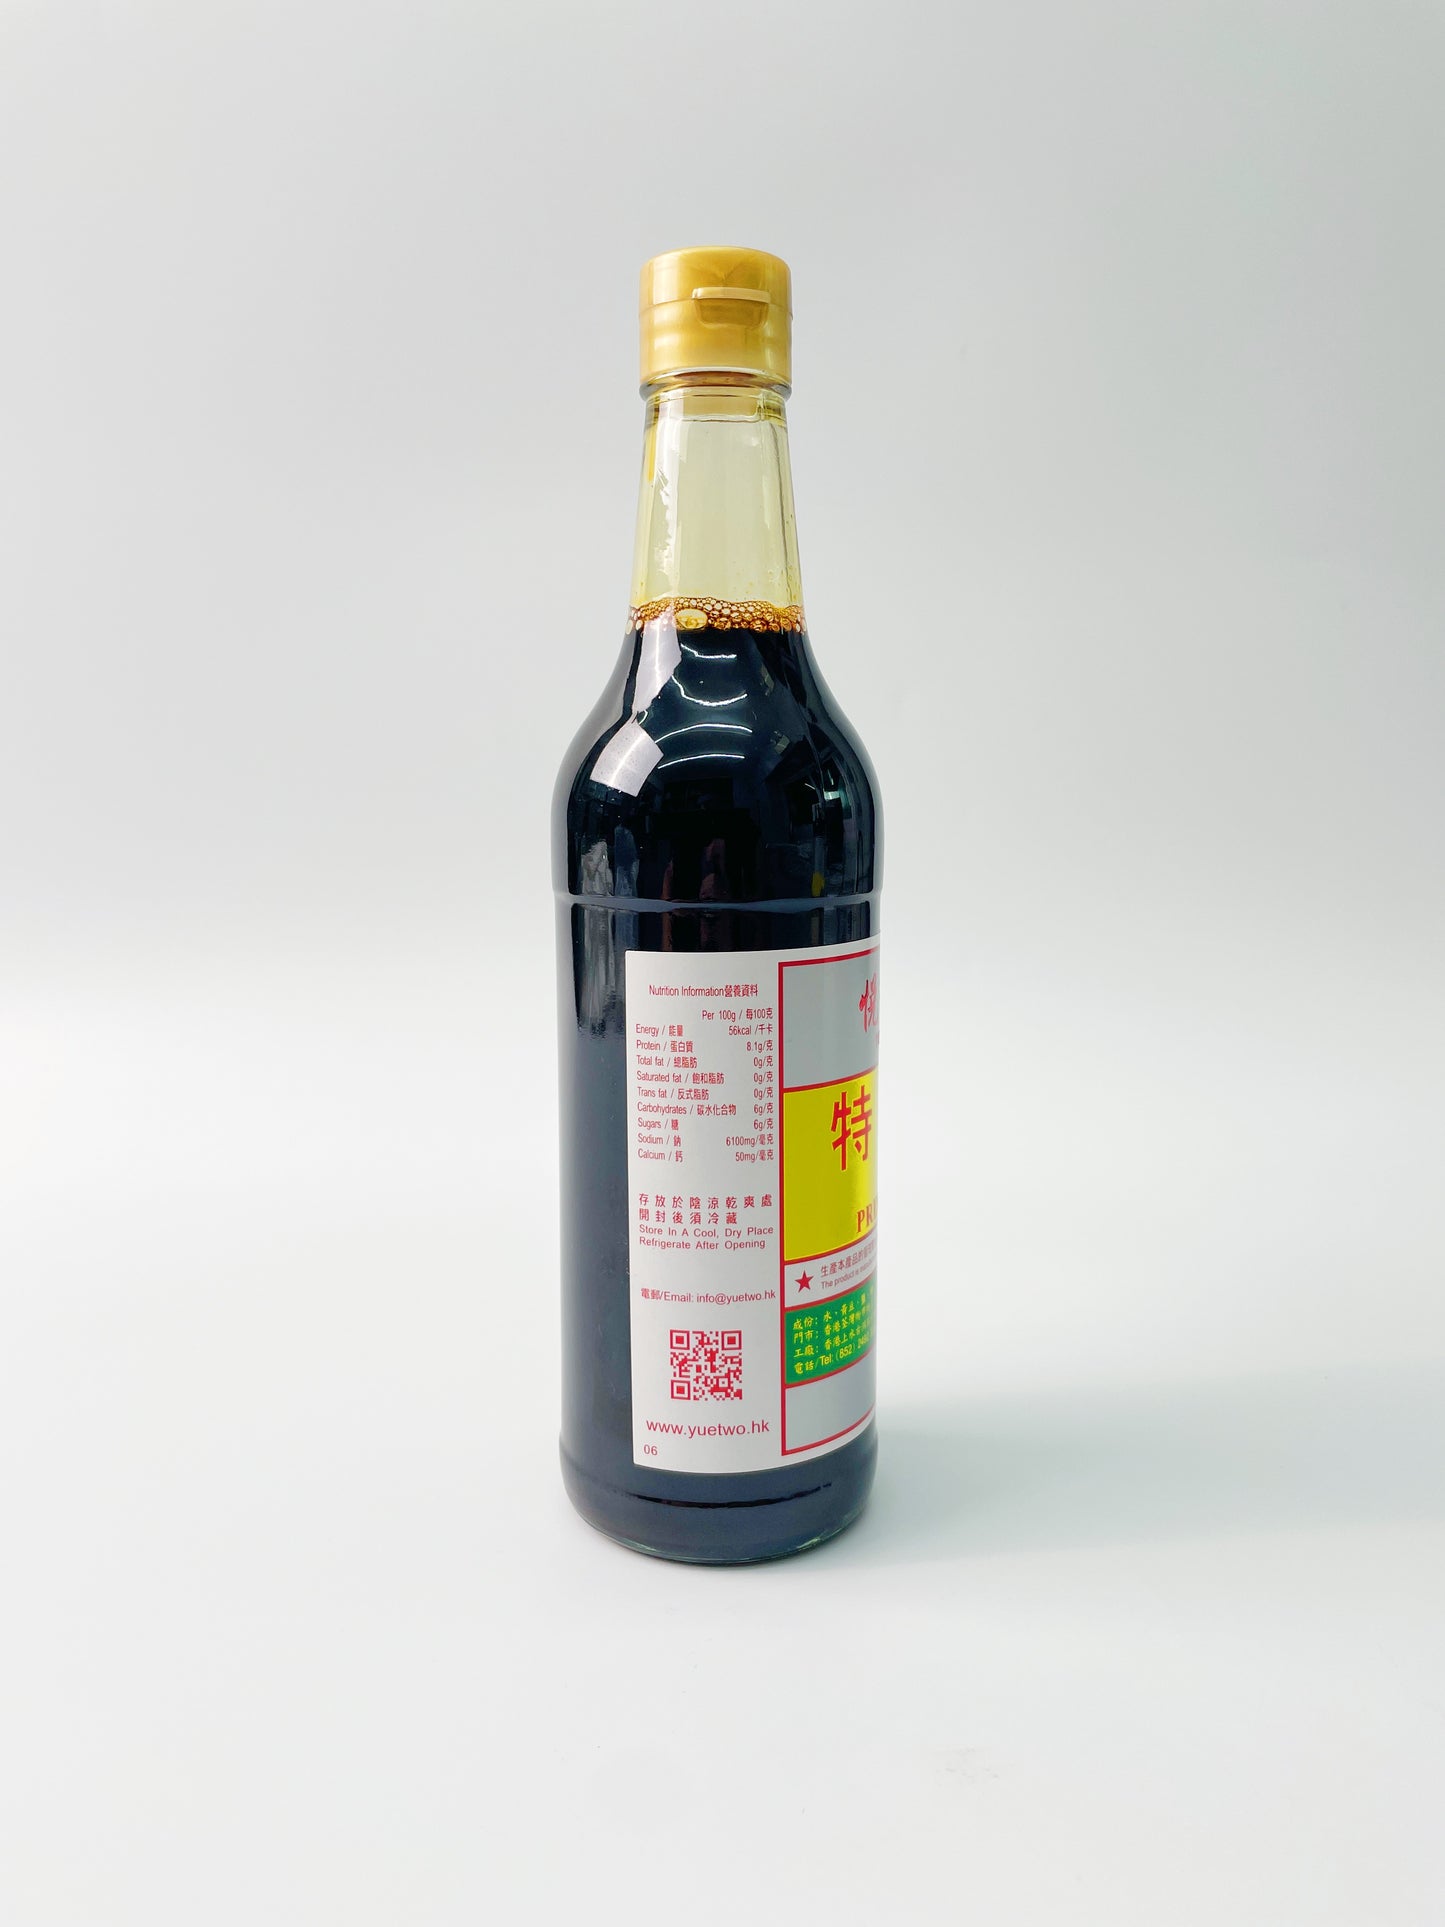 悅和醬園特級醬油(頭抽-生抽) | Yuet Wo Premium Soy Sauce (500ml)  